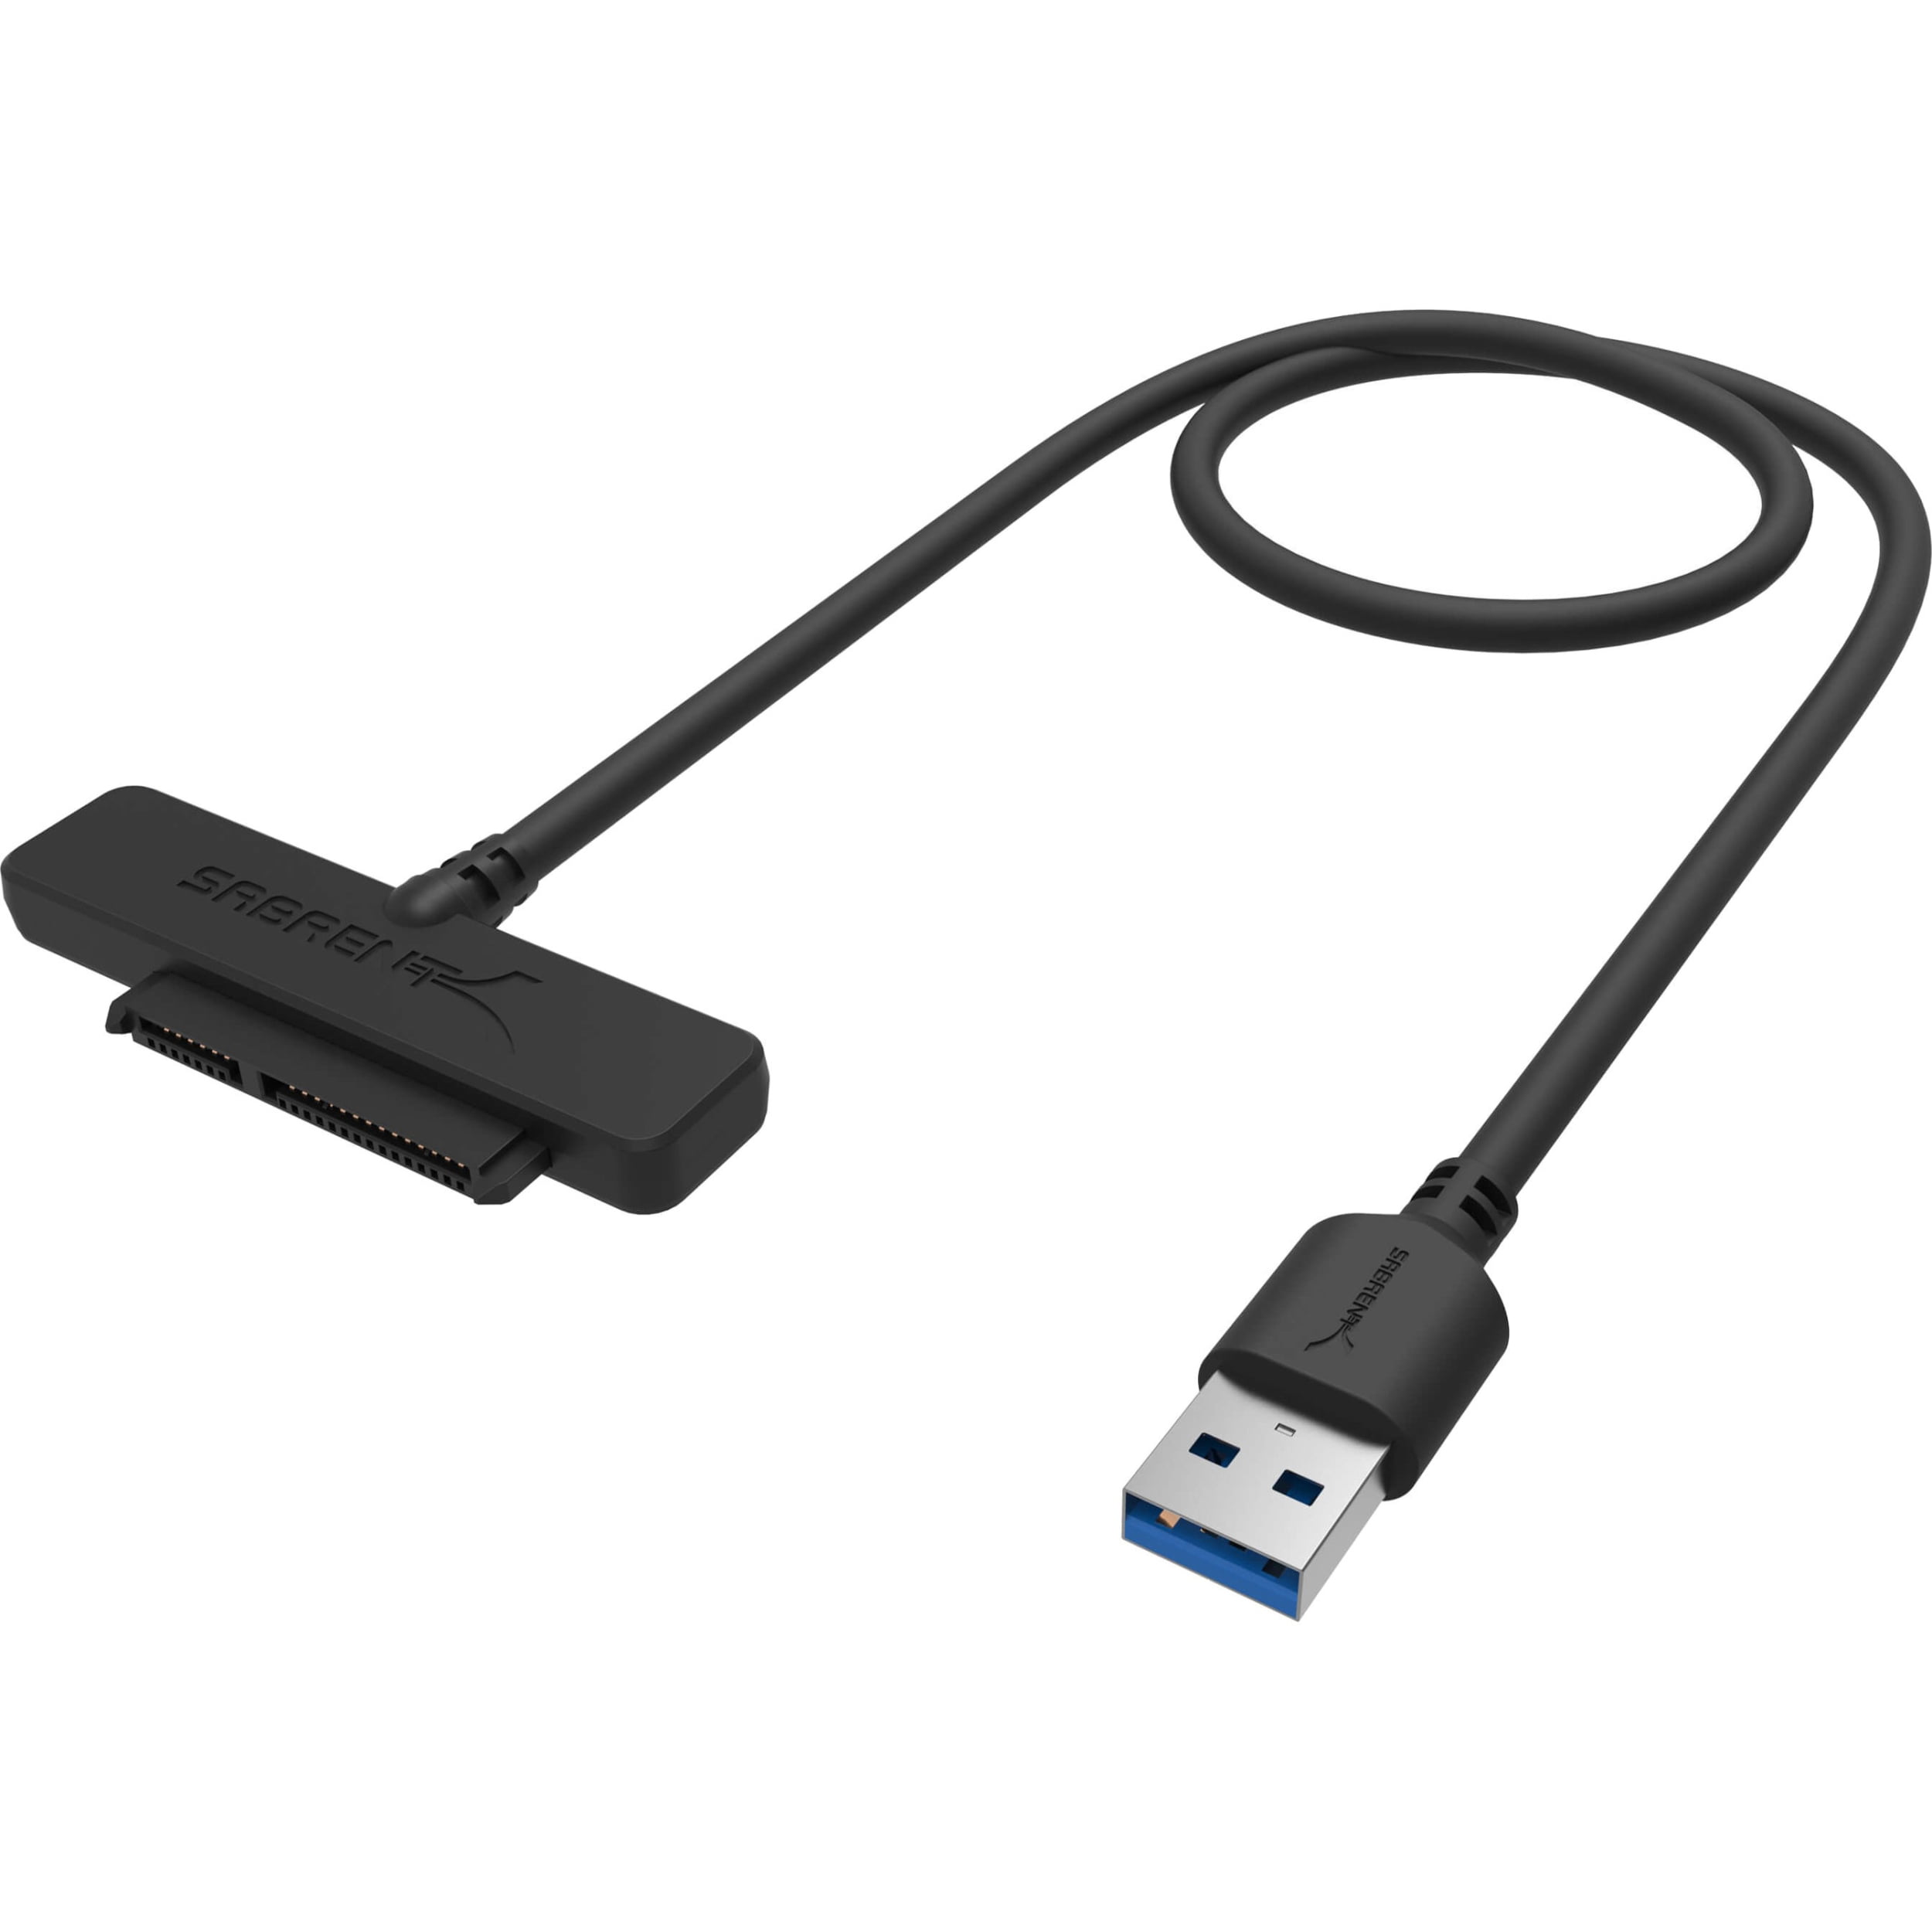 Sabrent USB to 2.5-Inch SATA I/II/IIIHard Drive Adapter - Walmart.com